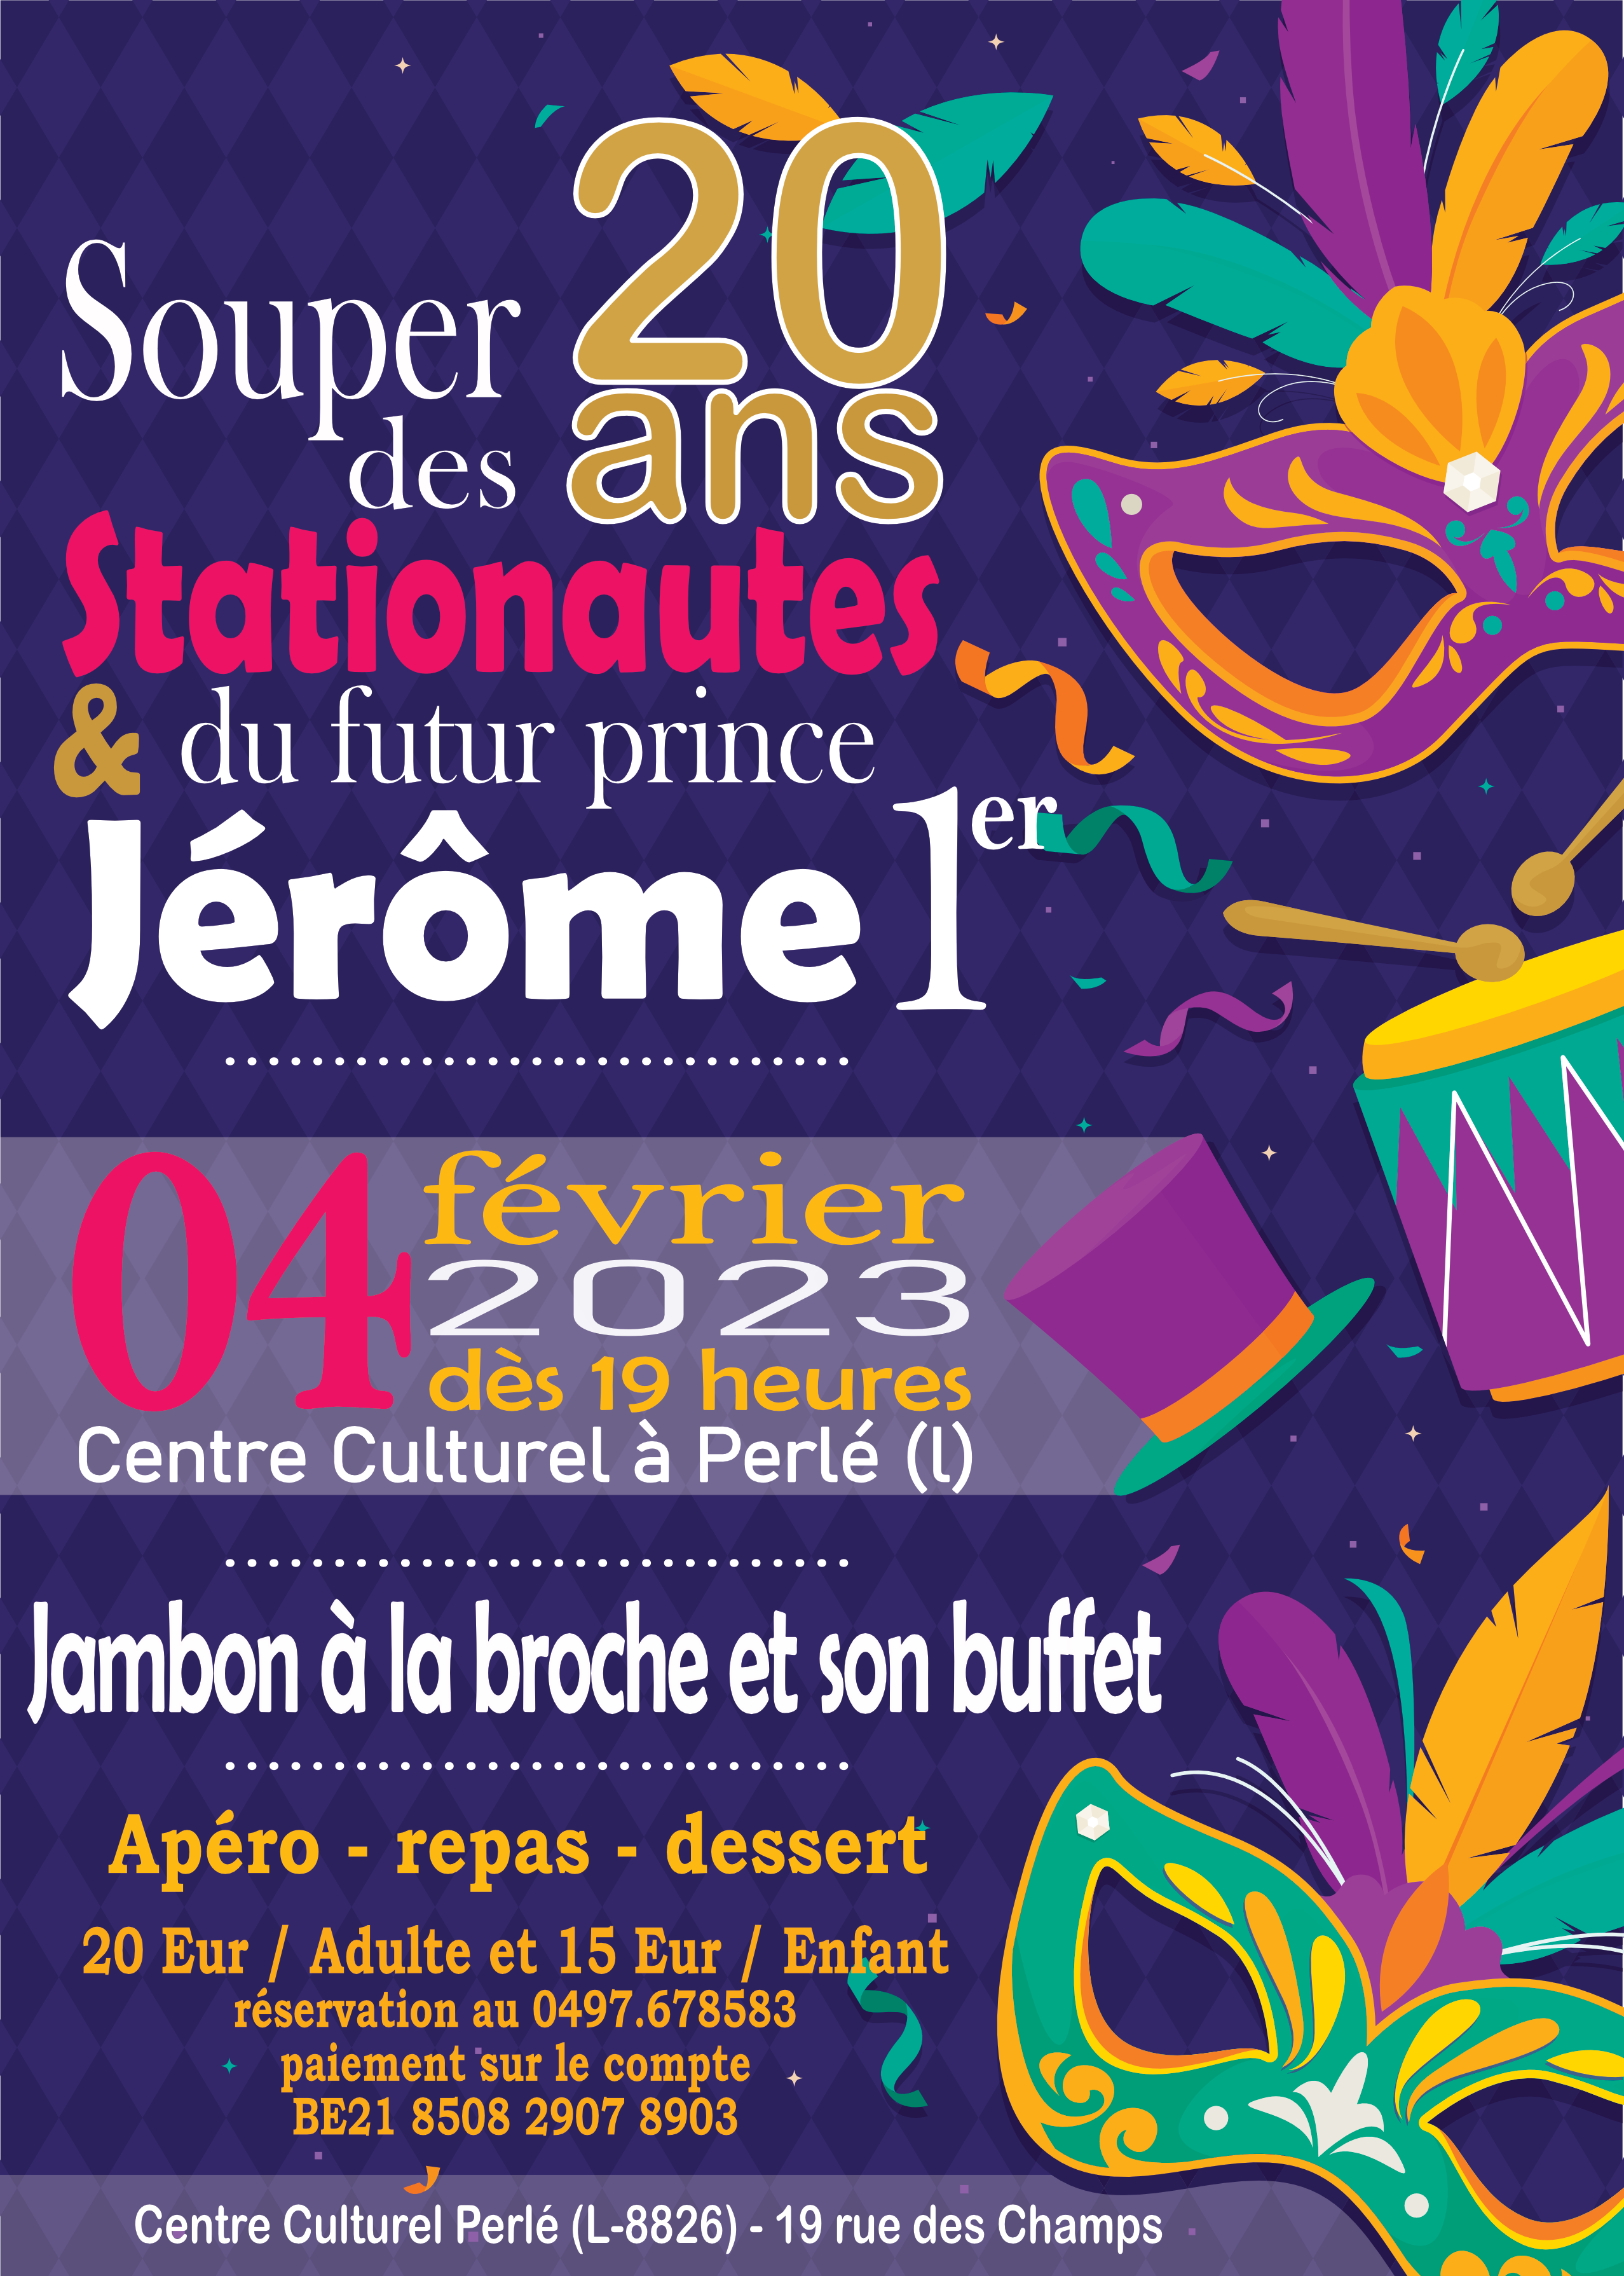 Carnaval de Martelange - Rejoignez-nous ce samedi 04 février pour fêtez les 20 ans du groupe d'animation <b>Les Stationautes</b> et le futur Prince 2023 <b>Jérôme 1er</b> !<br><br>

